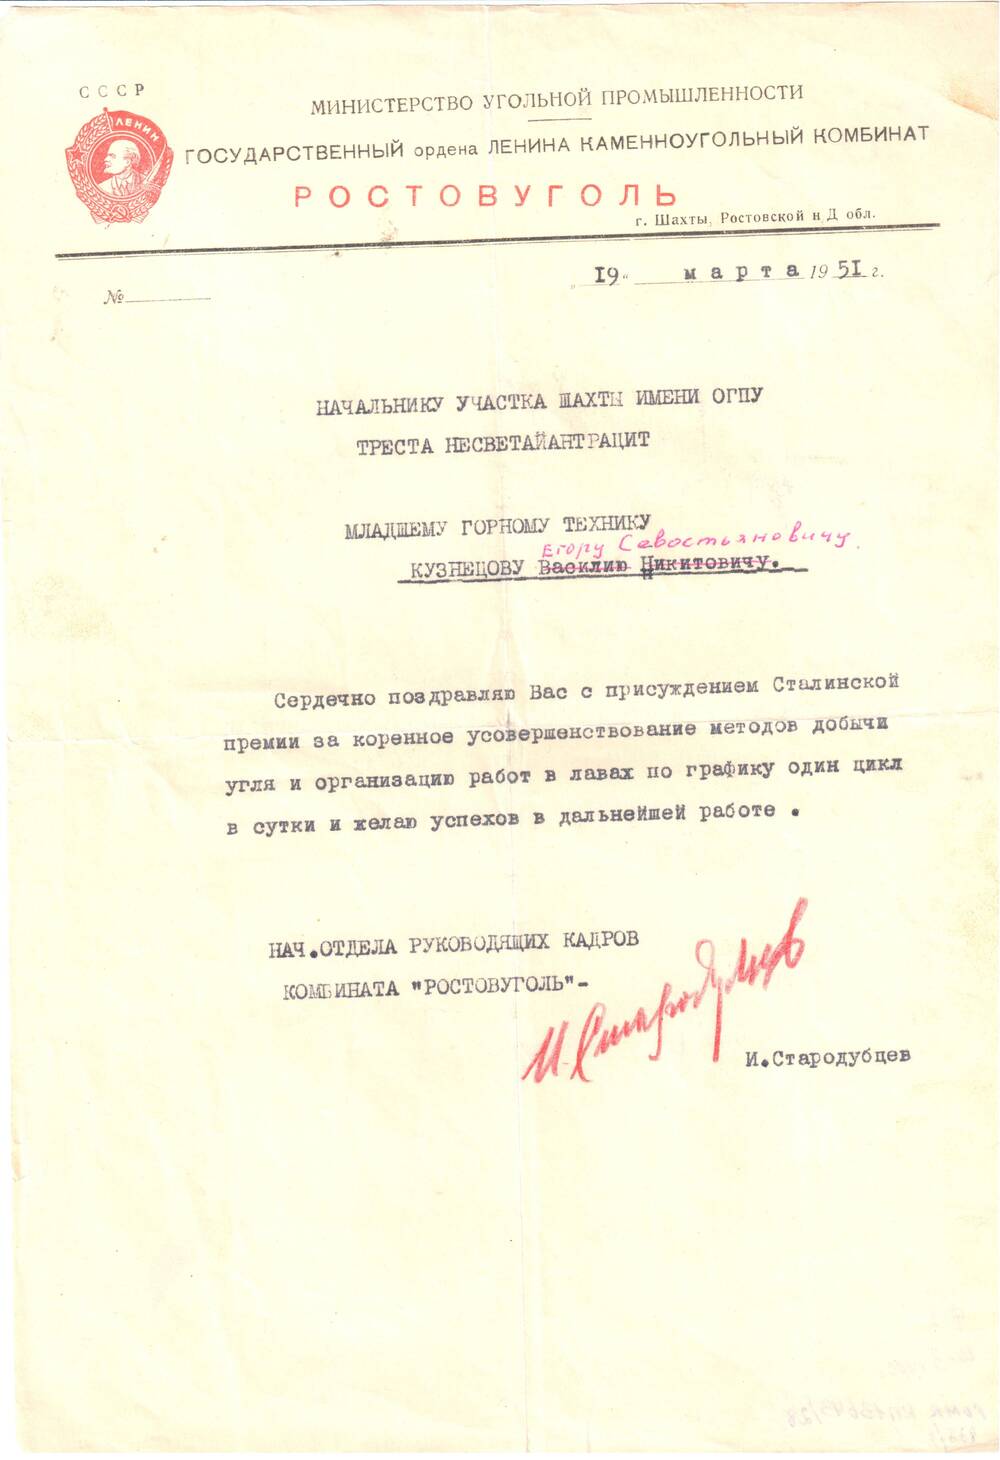 Поздравление Кузнецову Е.С..с присужд. Сталинской премии.1951год